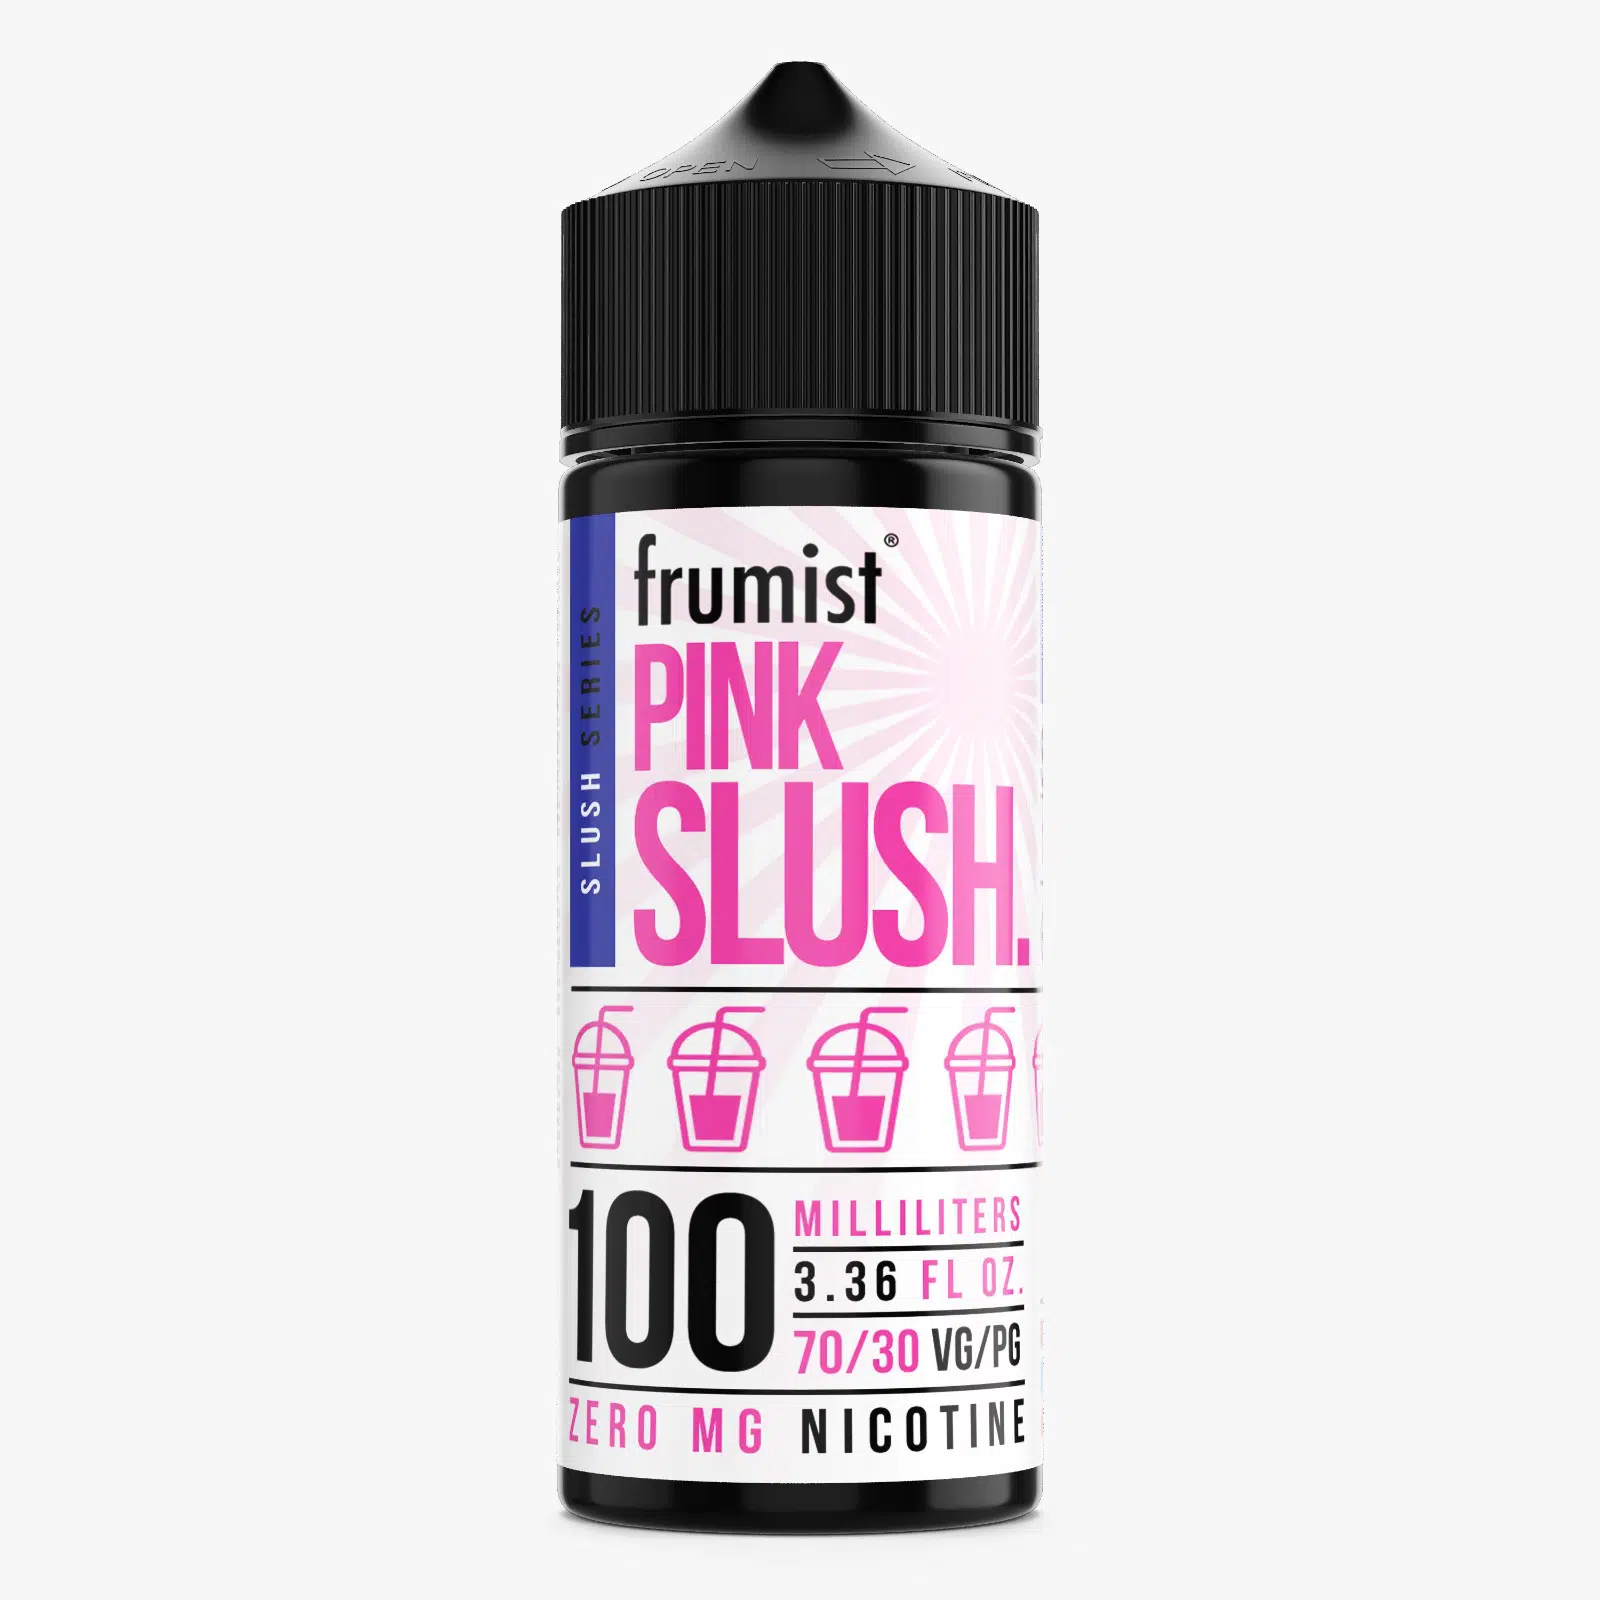 Pink Slush 100ml Shortfill by Frumist